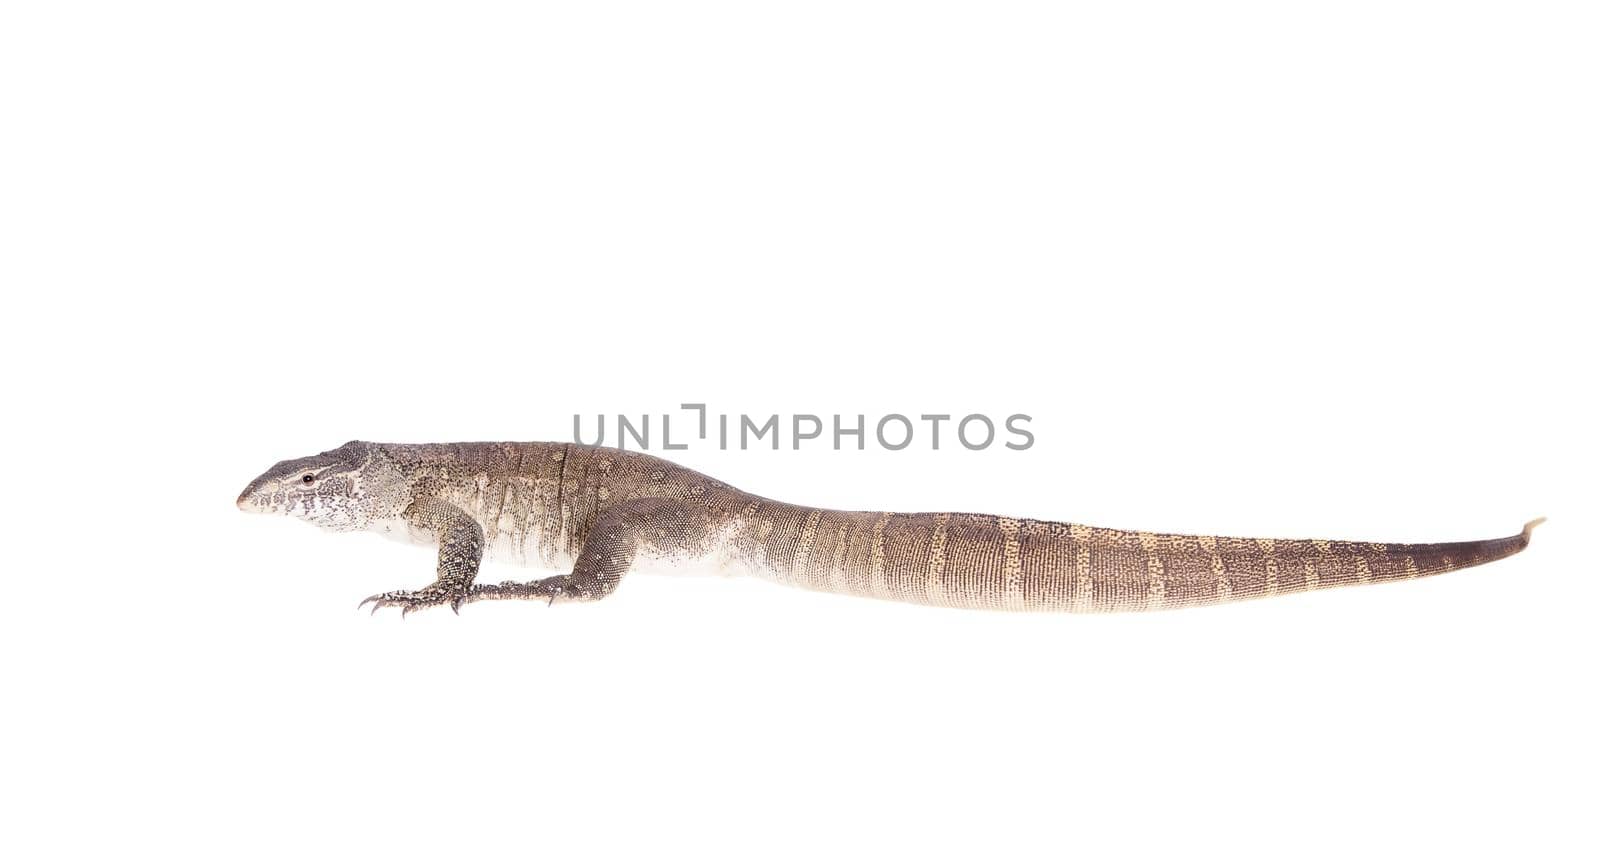 Nile monitor, Varanus niloticus, isolated on white background